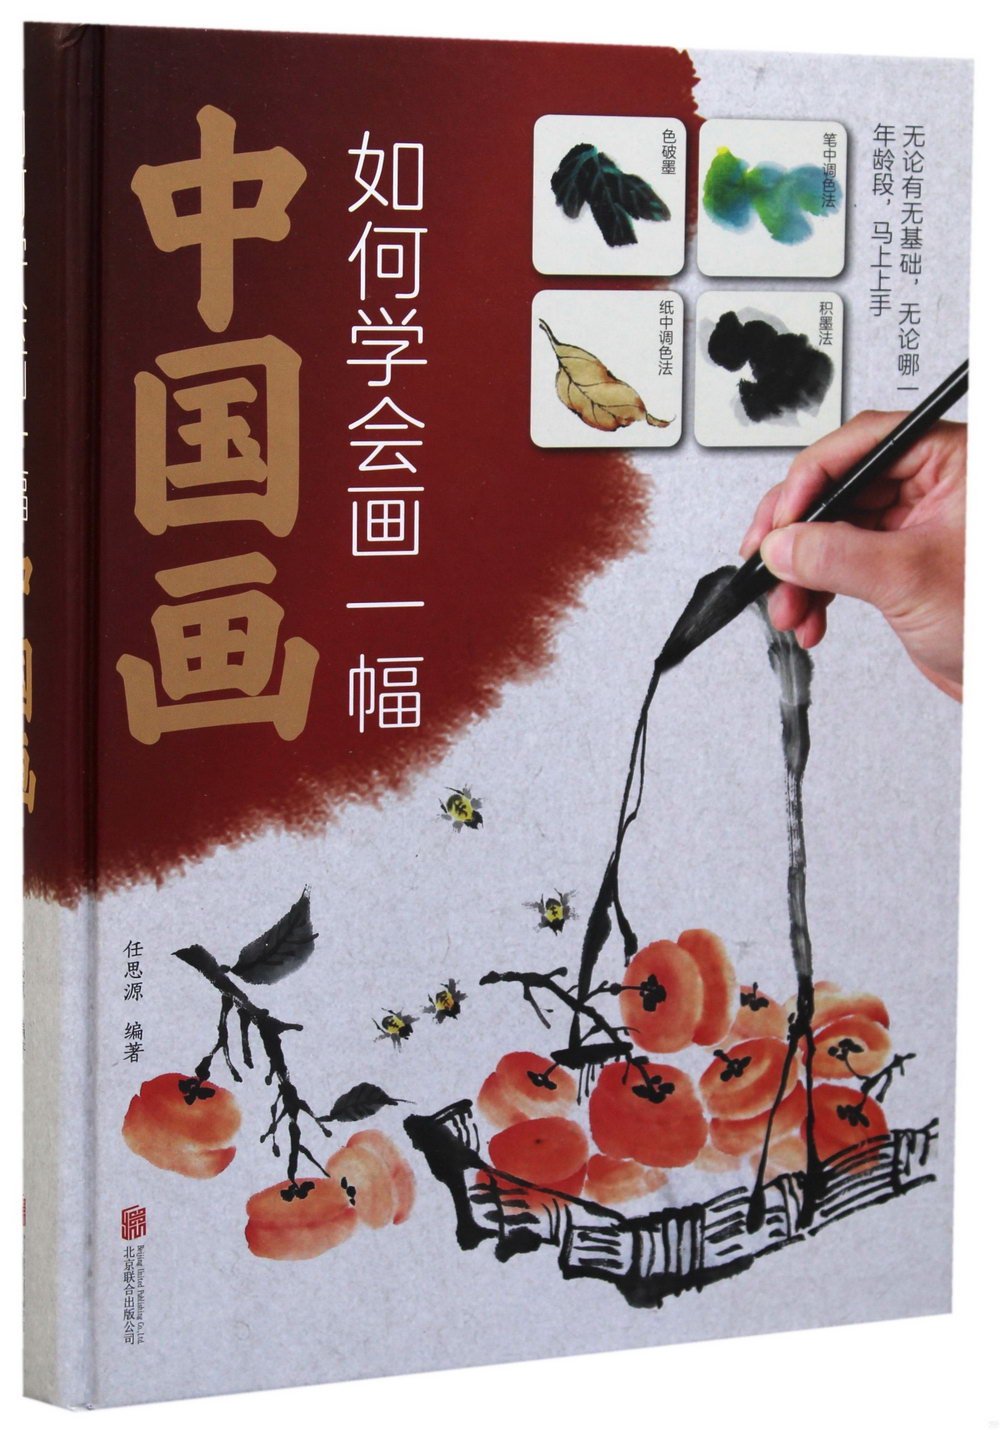 如何學會畫一幅中國畫